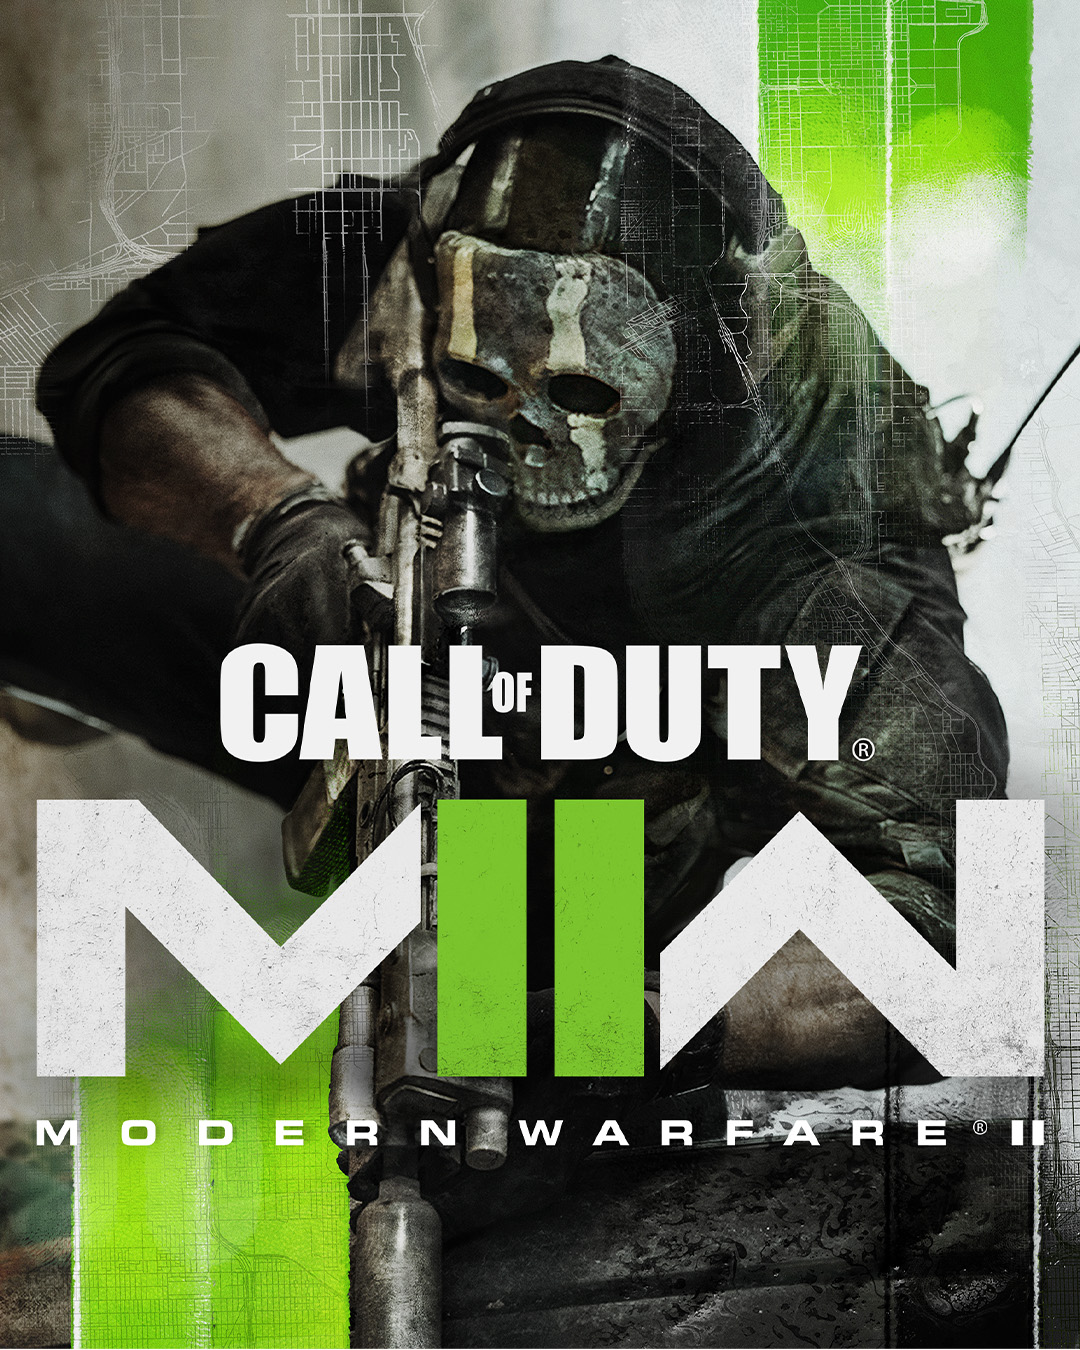 Call of Duty Modern Warfare 2 gets a release date alongside new